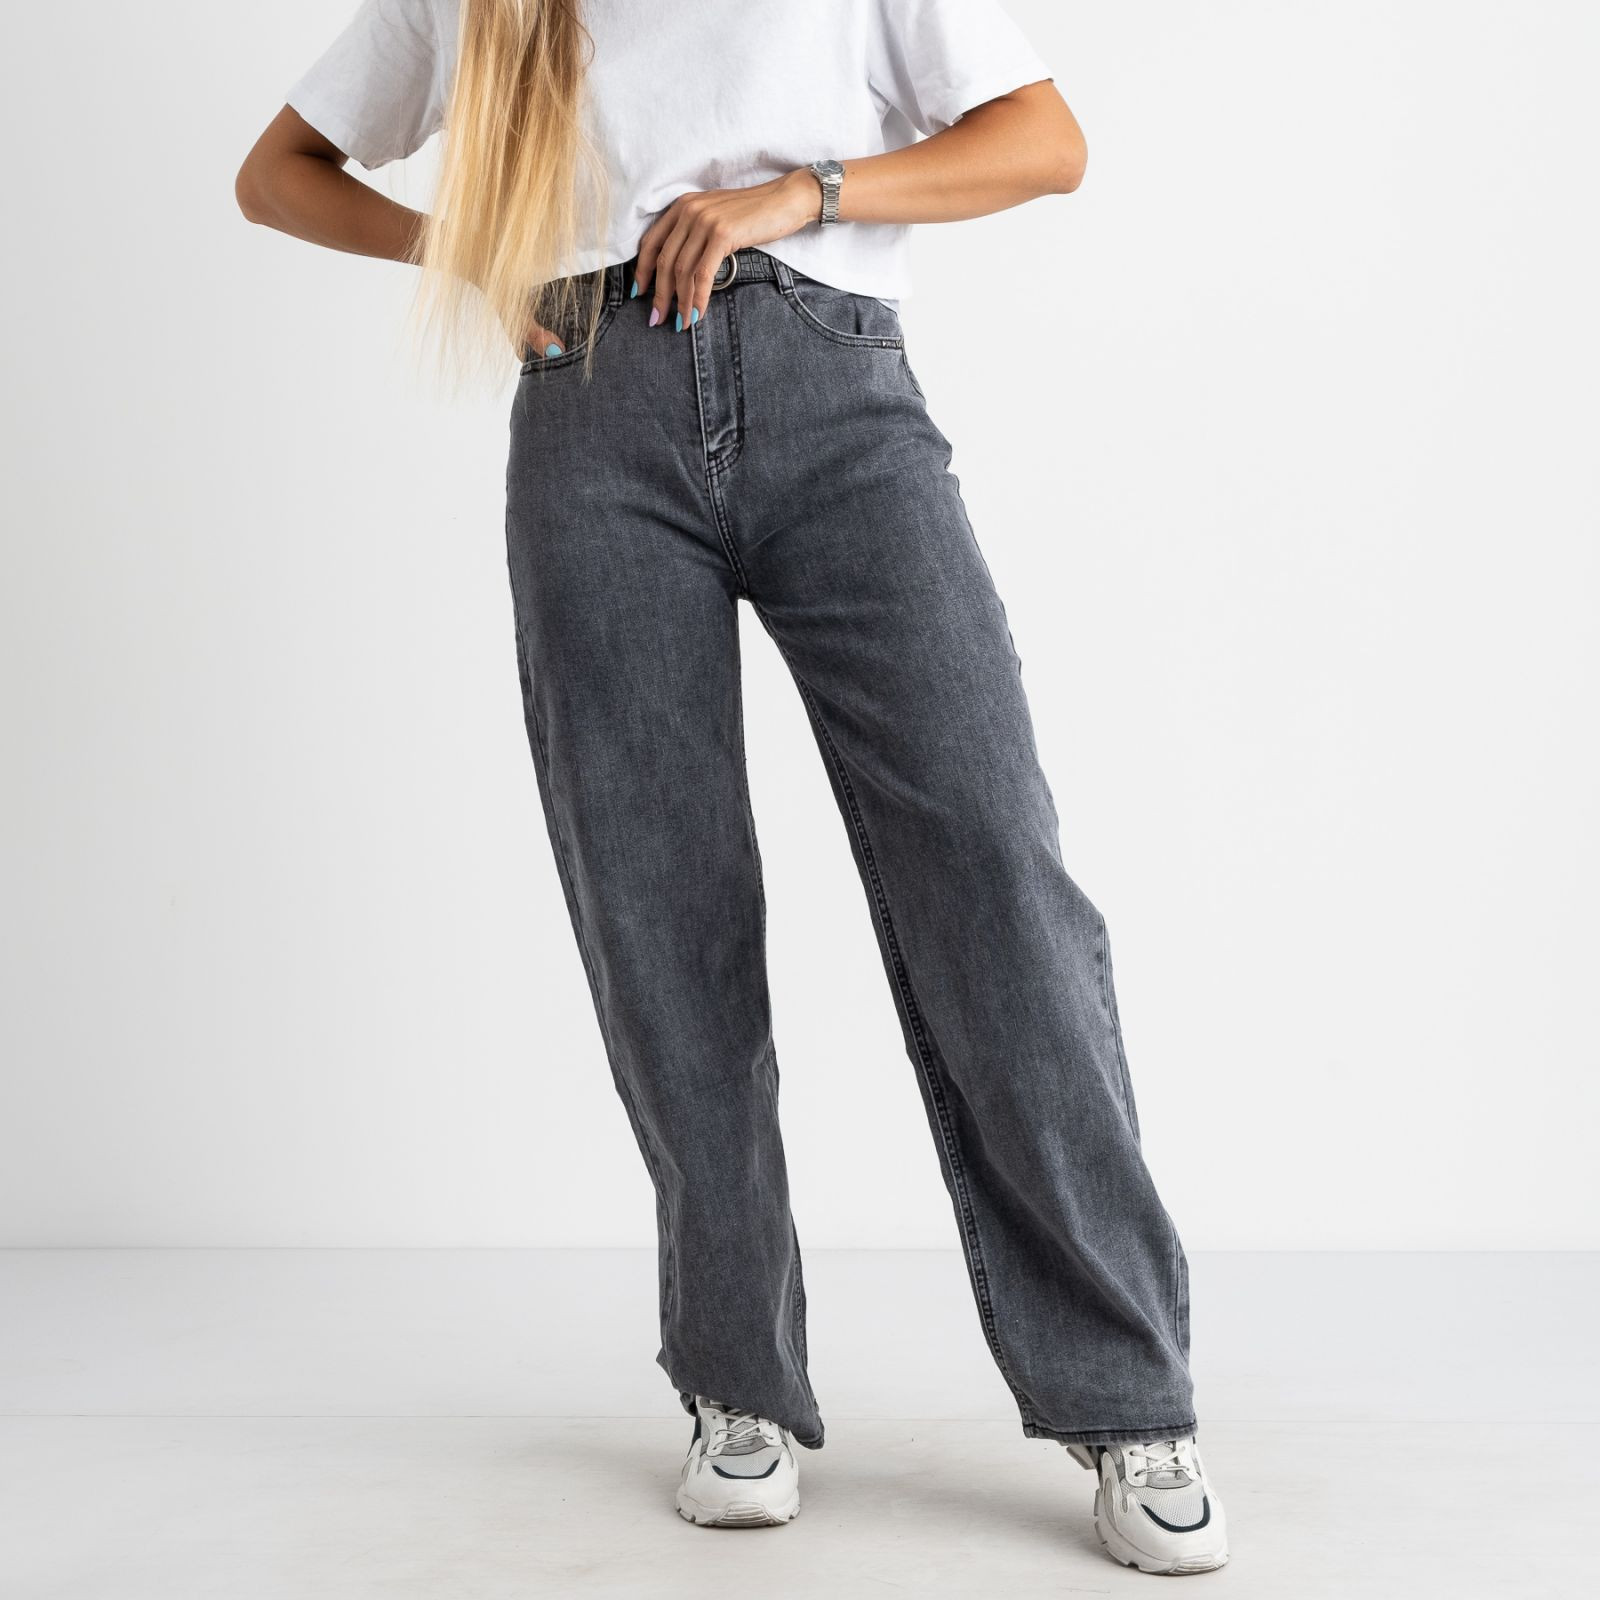 3090 KT.Moss джинсы-клеш серые стрейчевые (6 ед. размеры: 25.26.27.28.29.30)